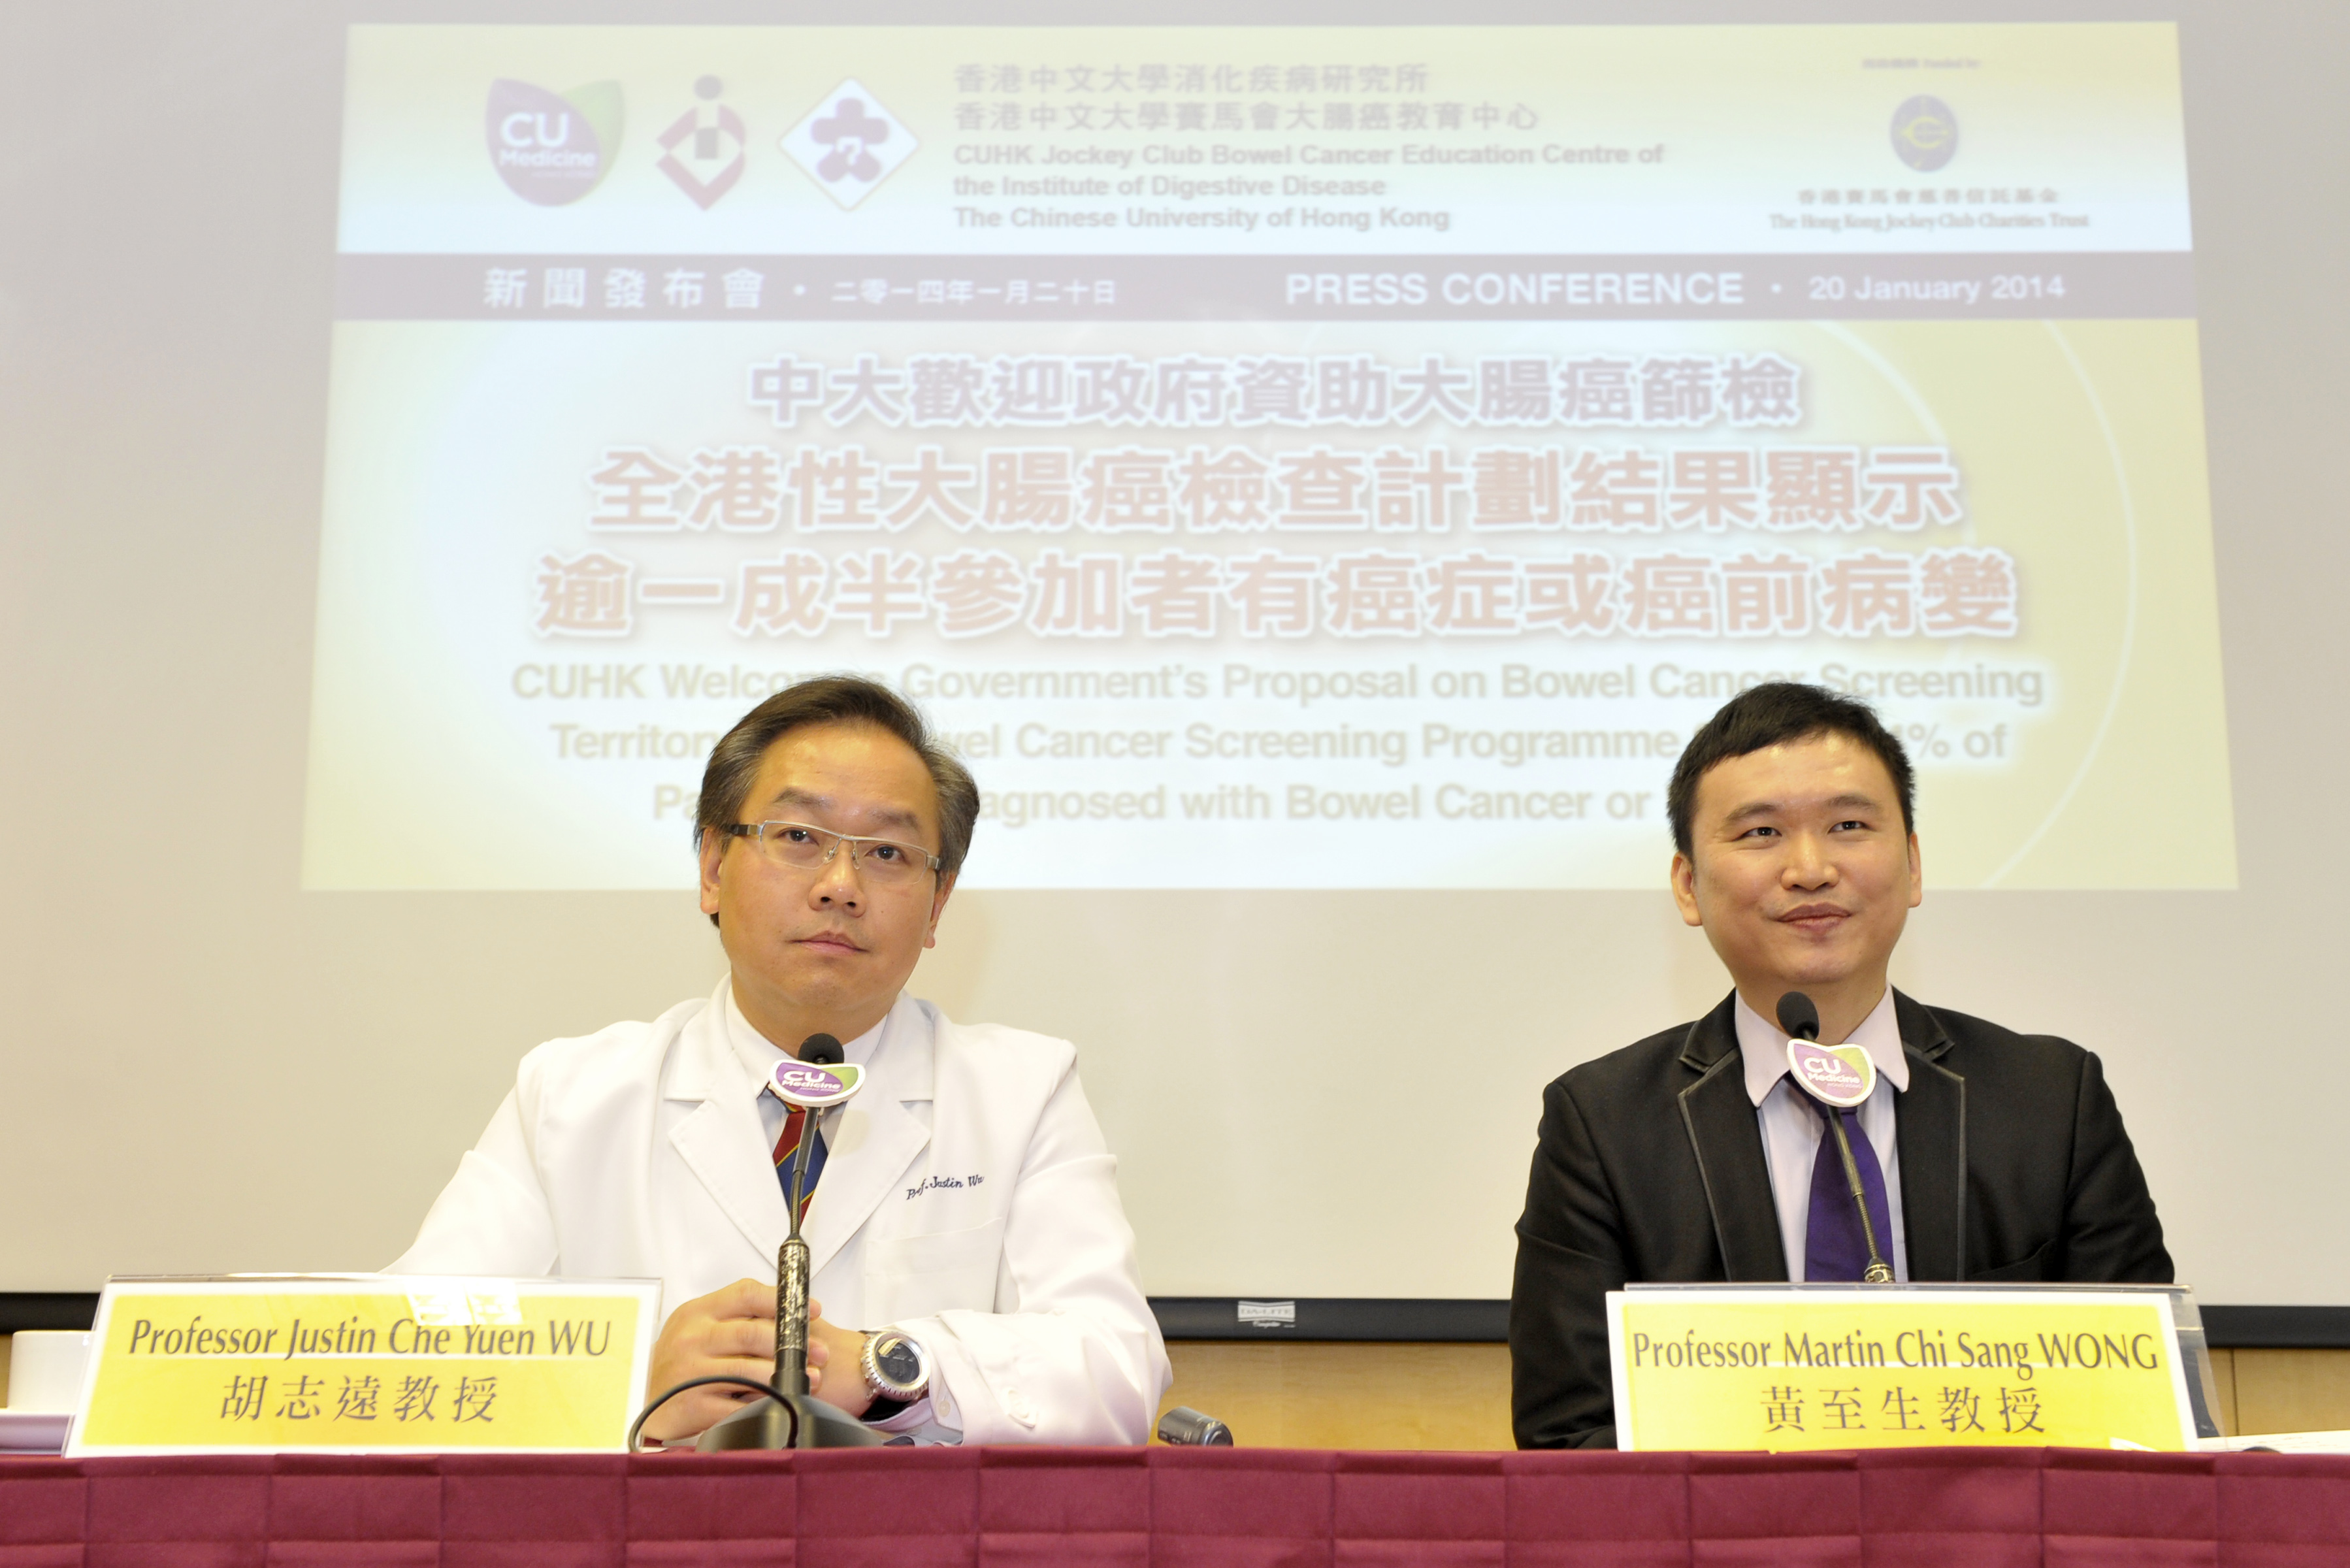 Prof. Justin Wu, Professor of Institute of Digestive Disease